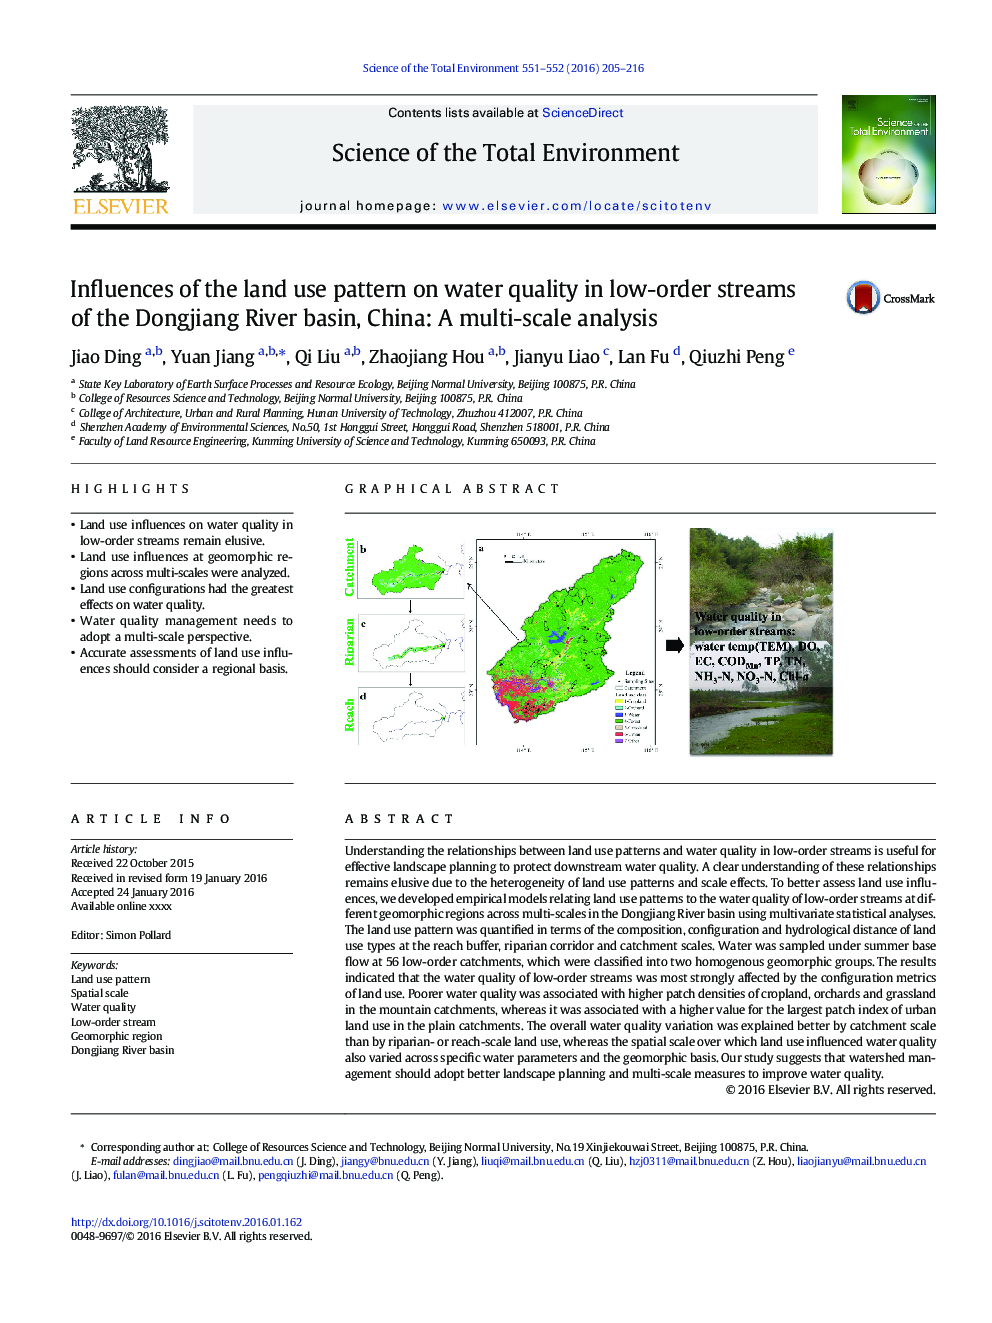 تأثیر الگوی استفاده از زمین بر کیفیت آب در جریانات کم نظیر حوضه رودخانه دونگینگانگ چین: یک تحلیل چند بعدی 